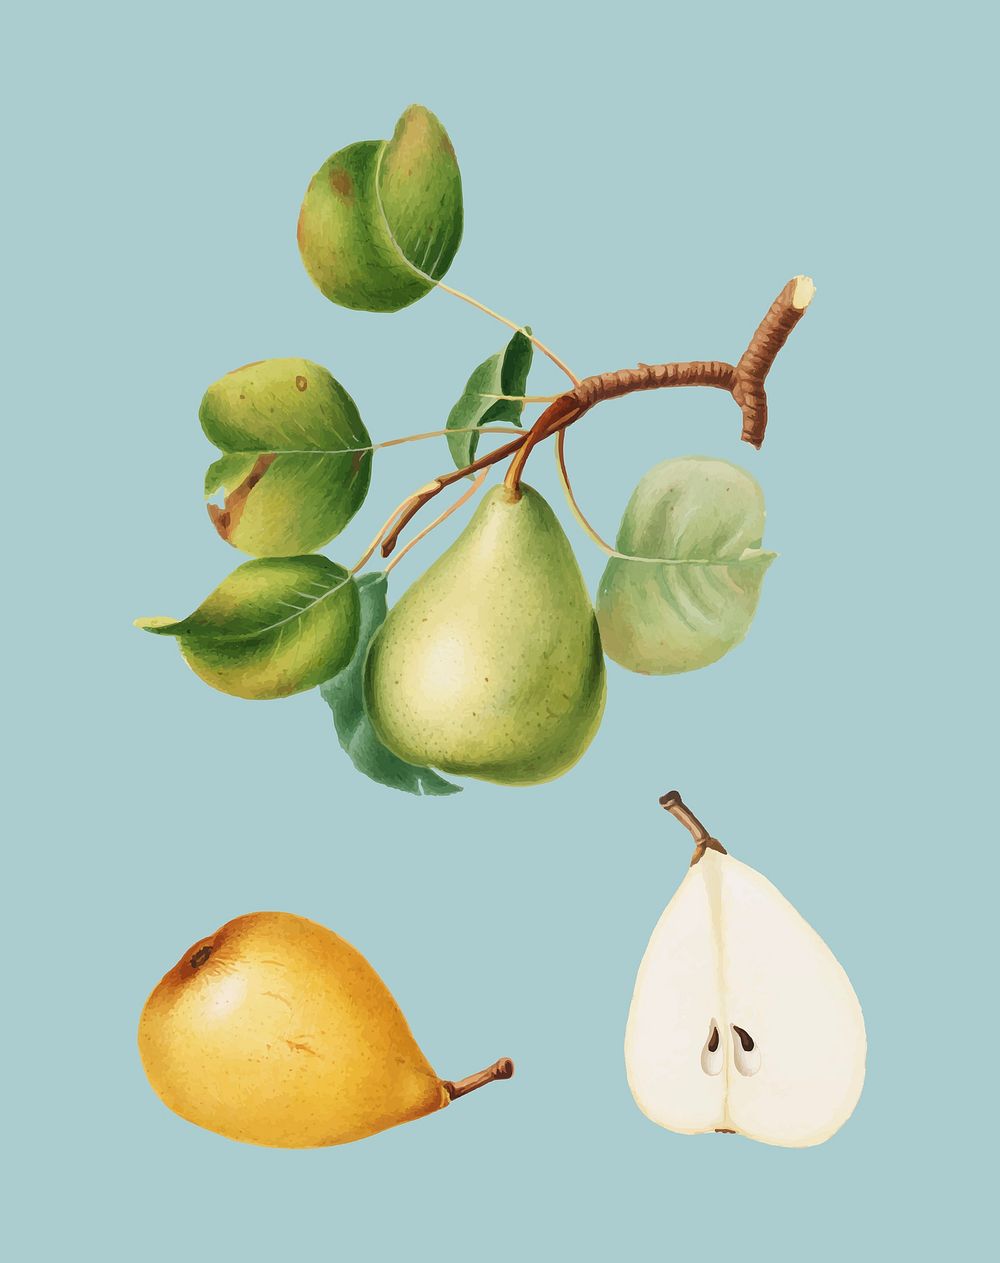 Pear from Pomona Italiana illustration